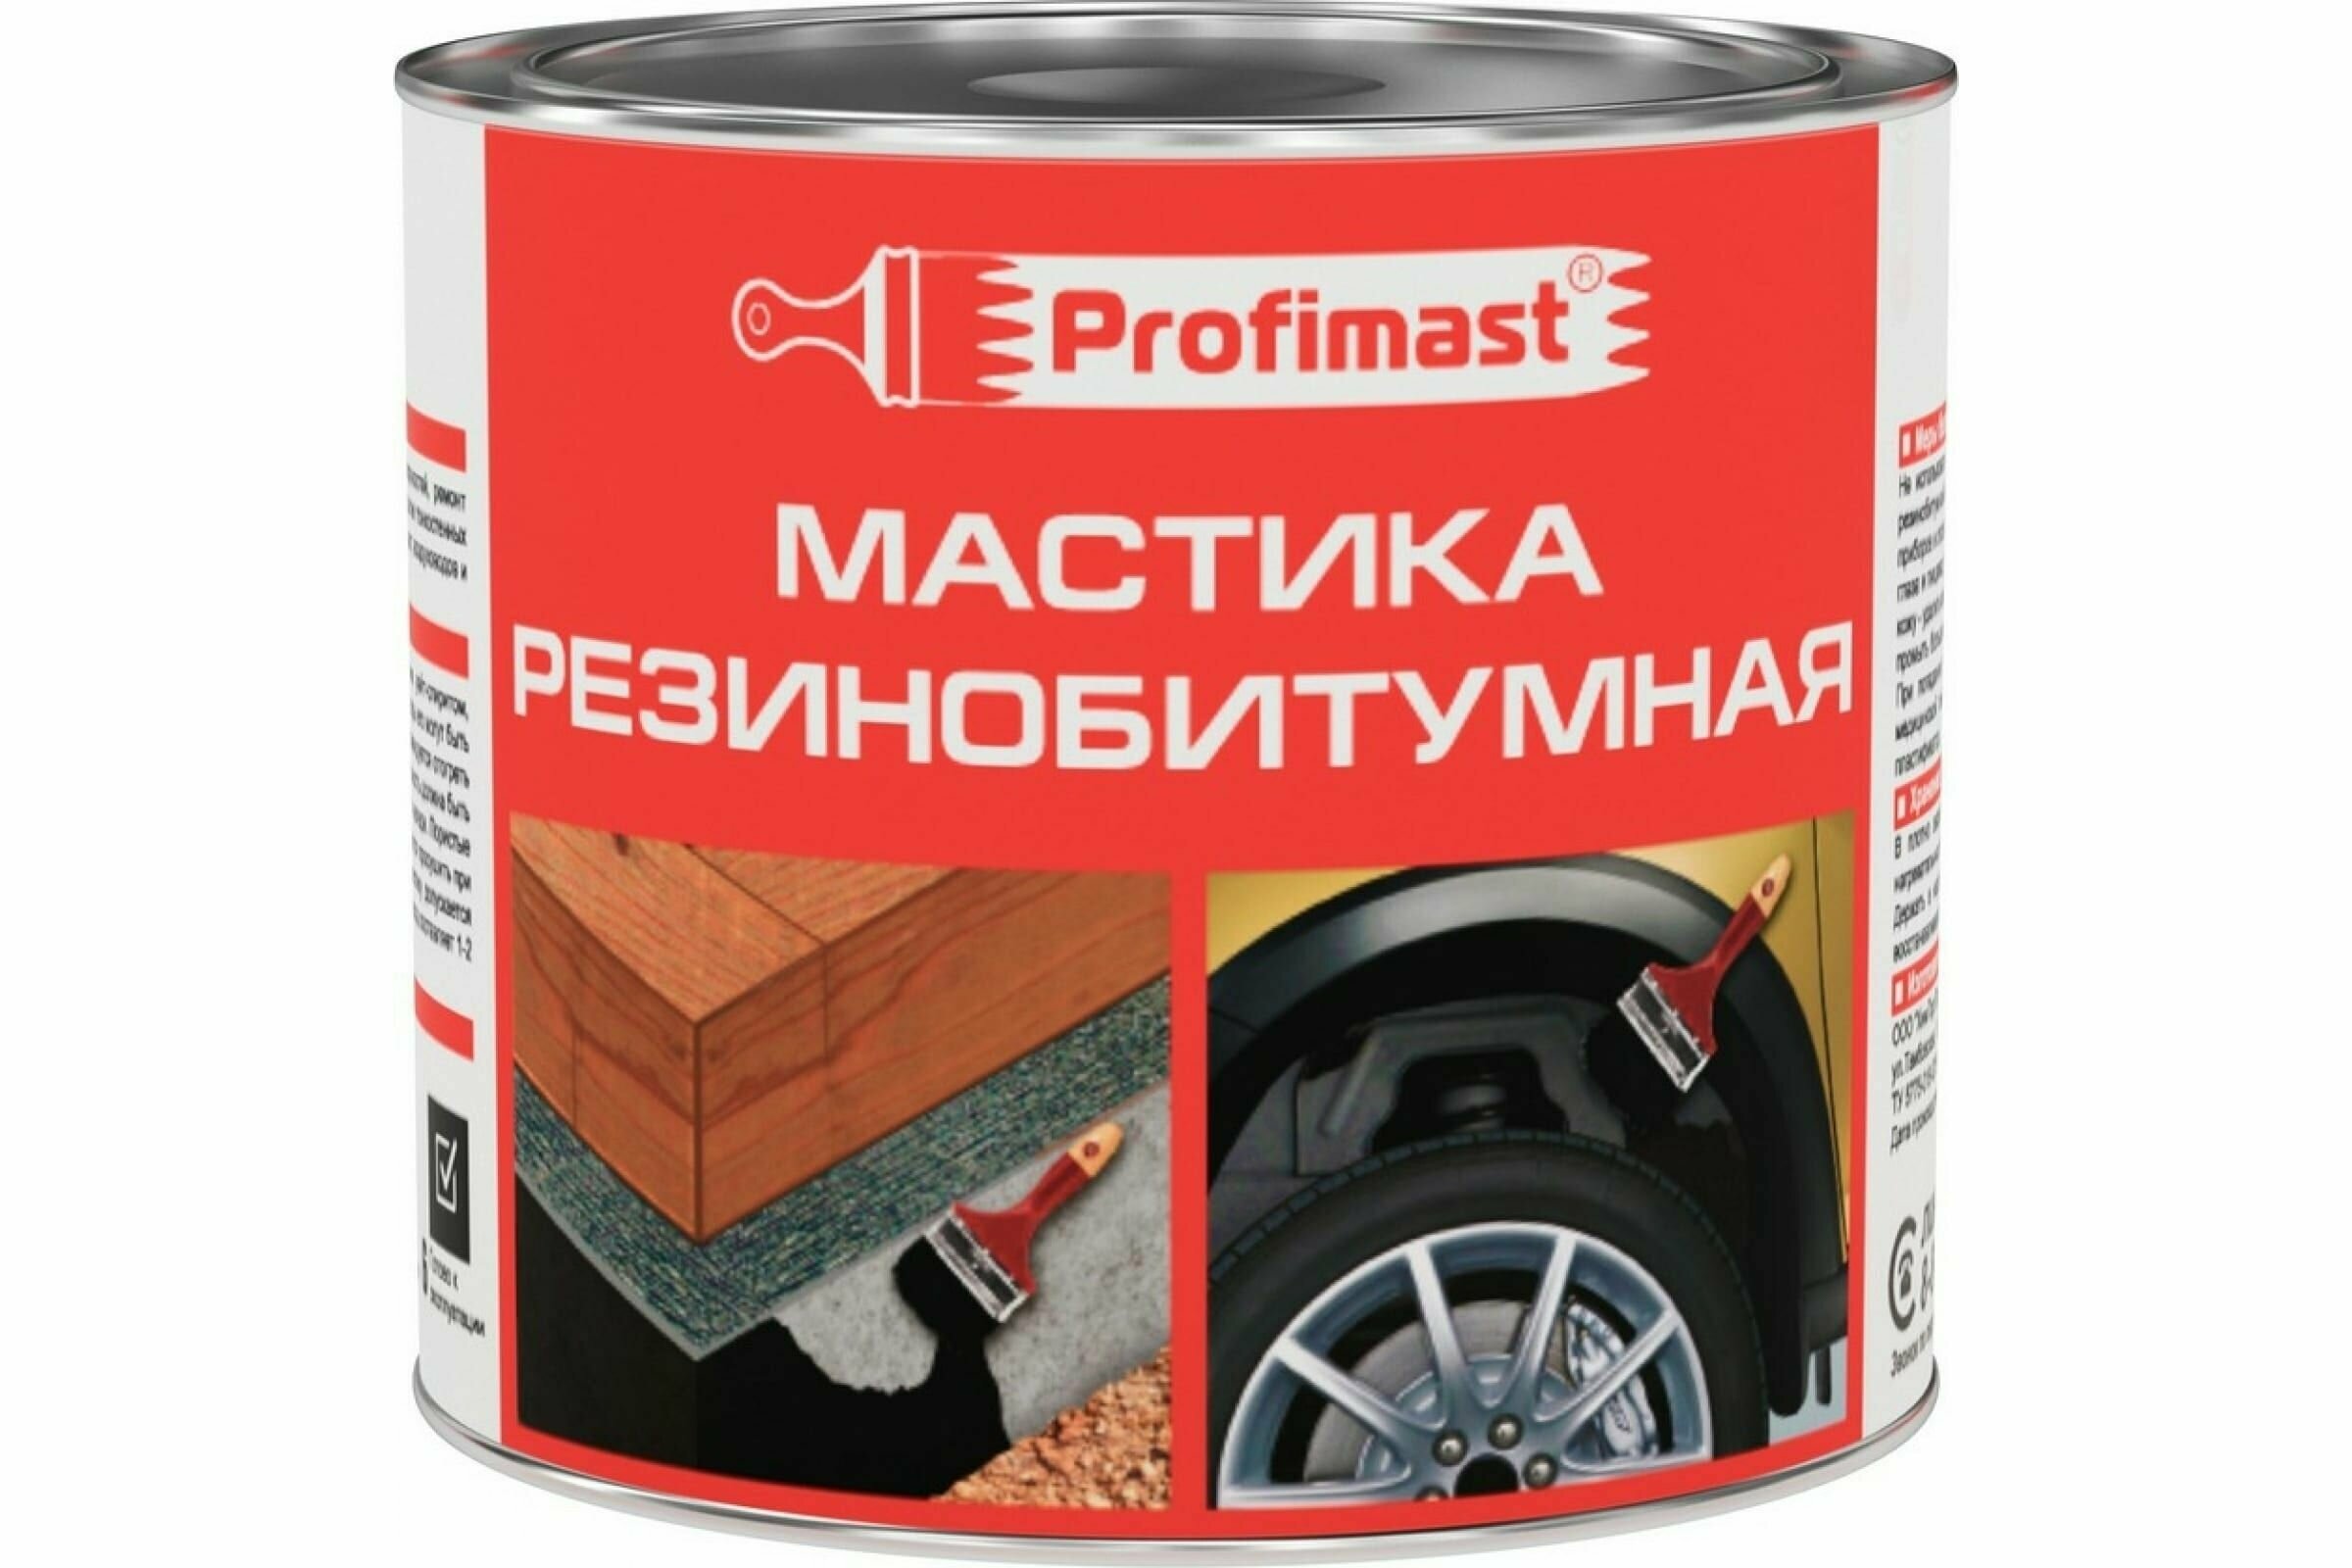 Резинобитумная мастика Profimast 2 л / 1,8 кг